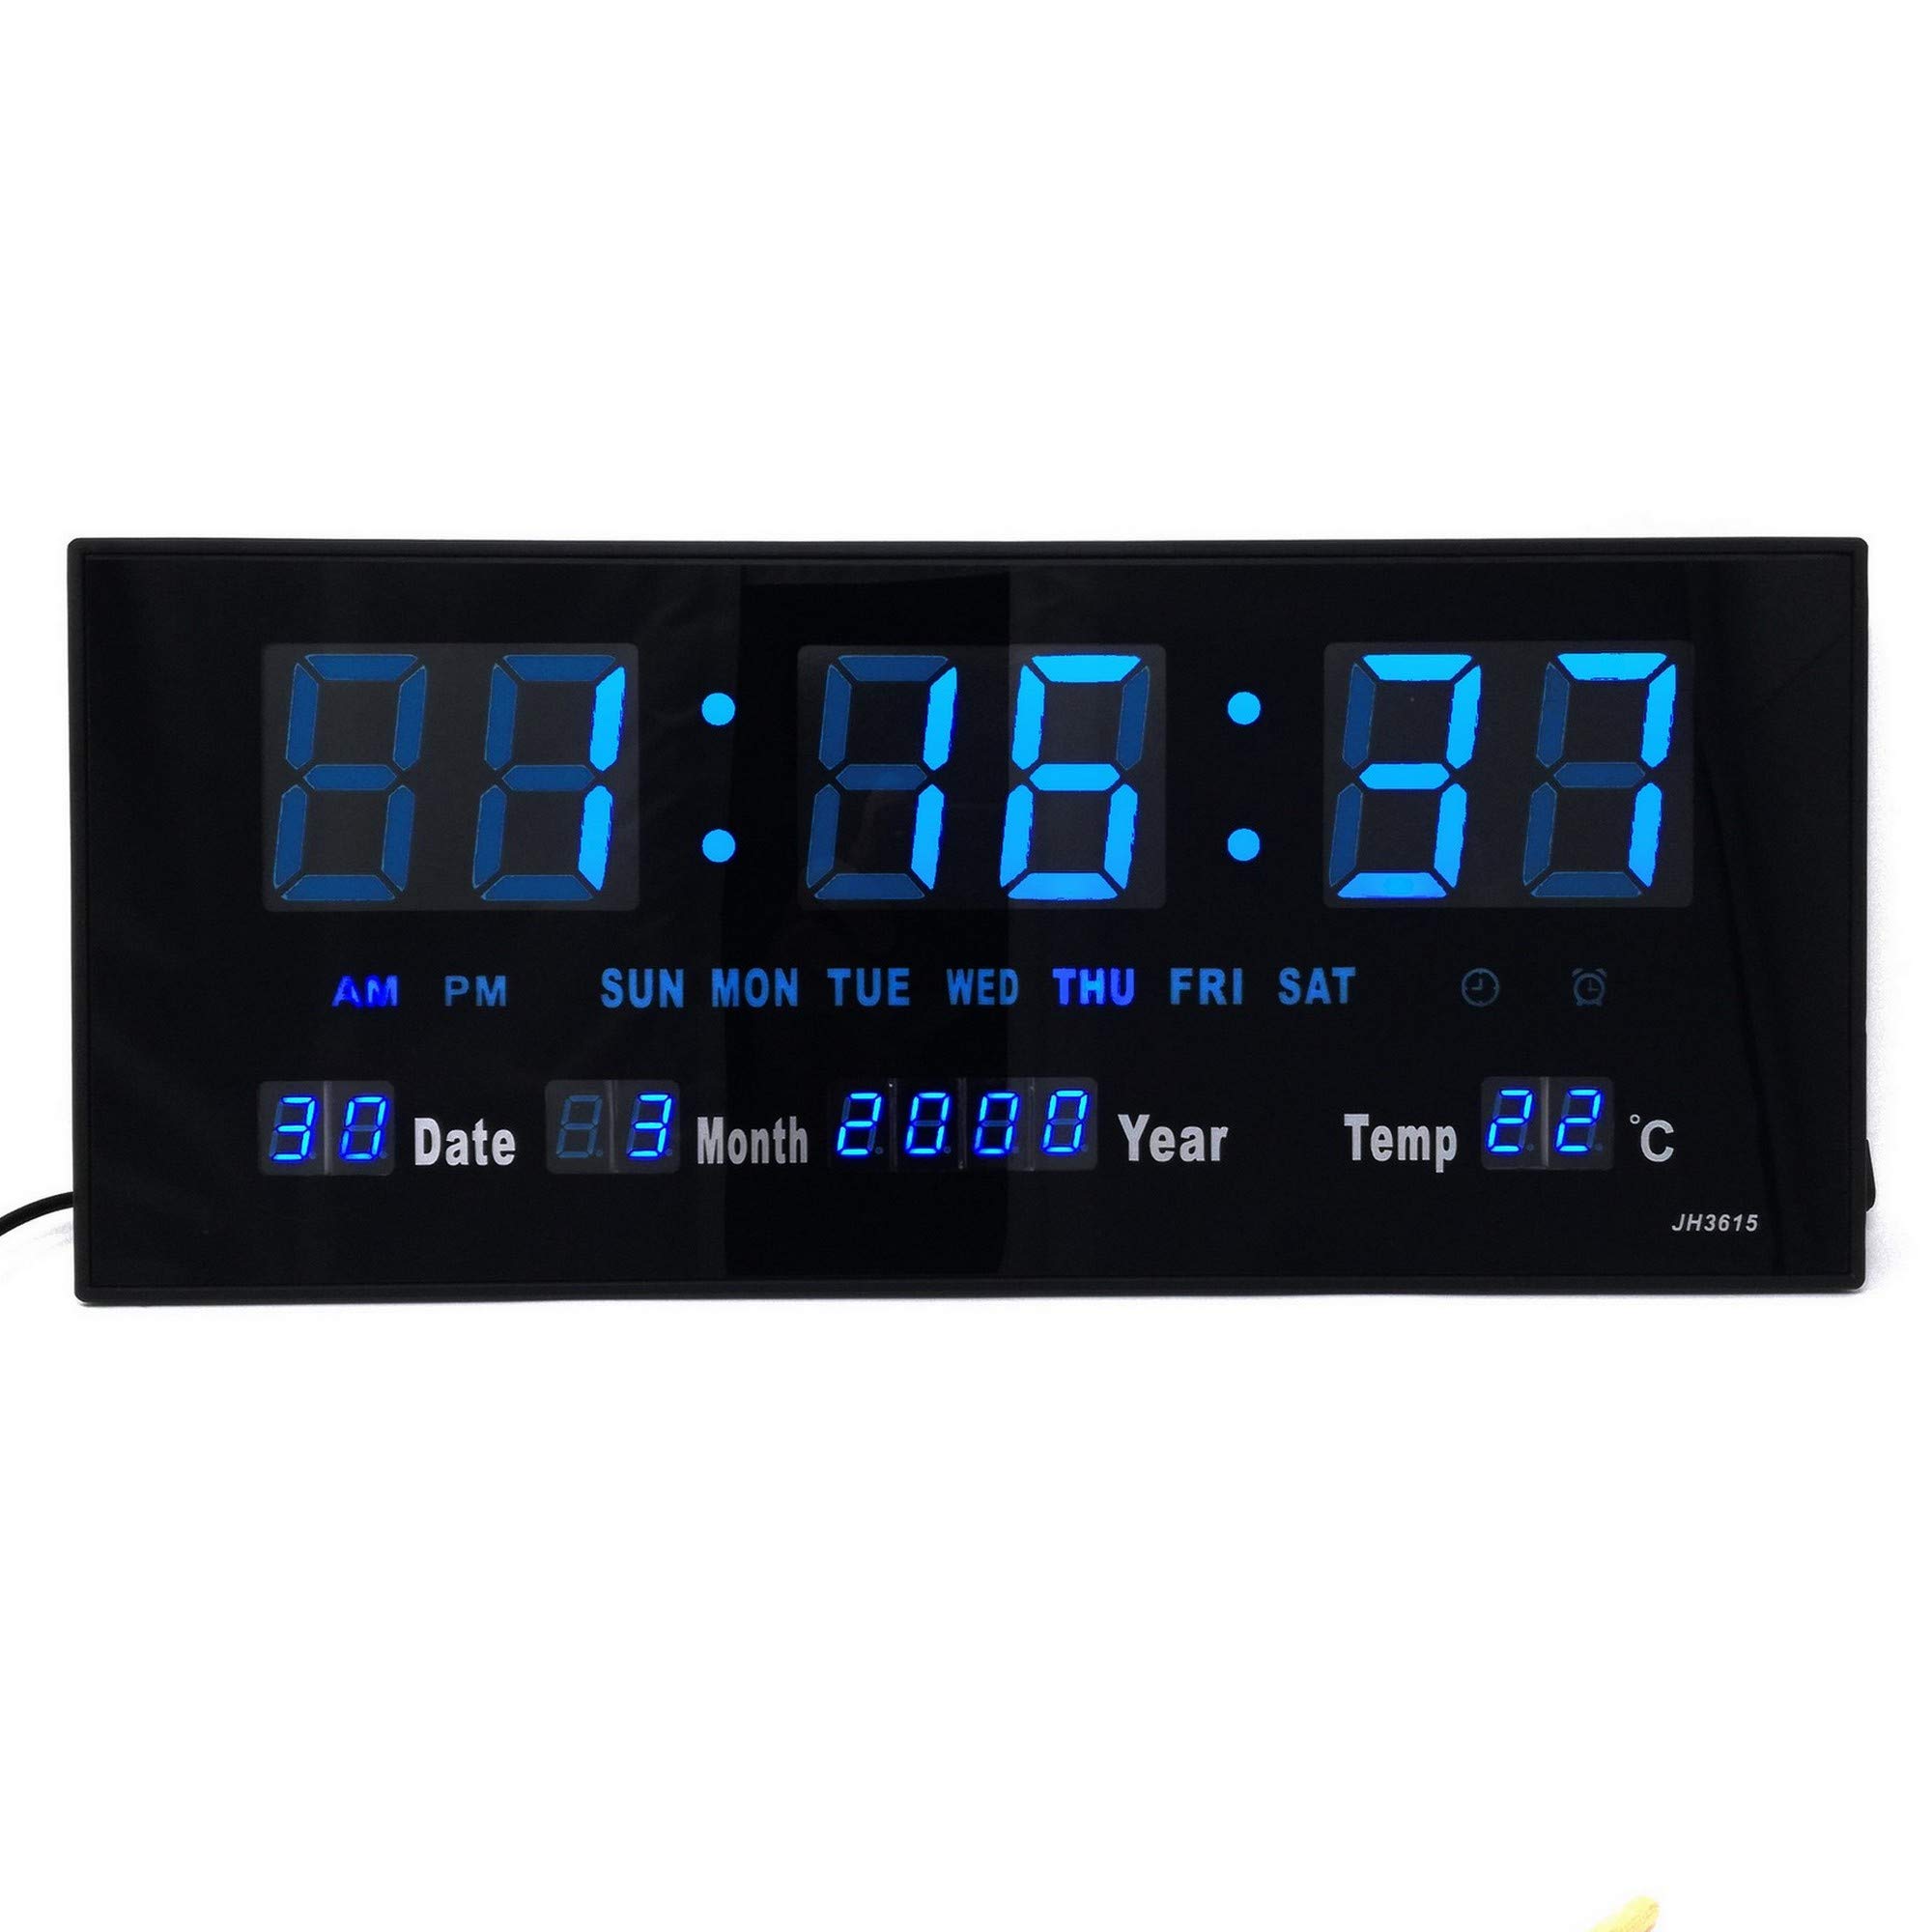 Starlet24 LED Wanduhr mit Timer Wecker Schlummer Kalender Temperatur große LED-Anzeige 36x15cm (JH3615) Blau